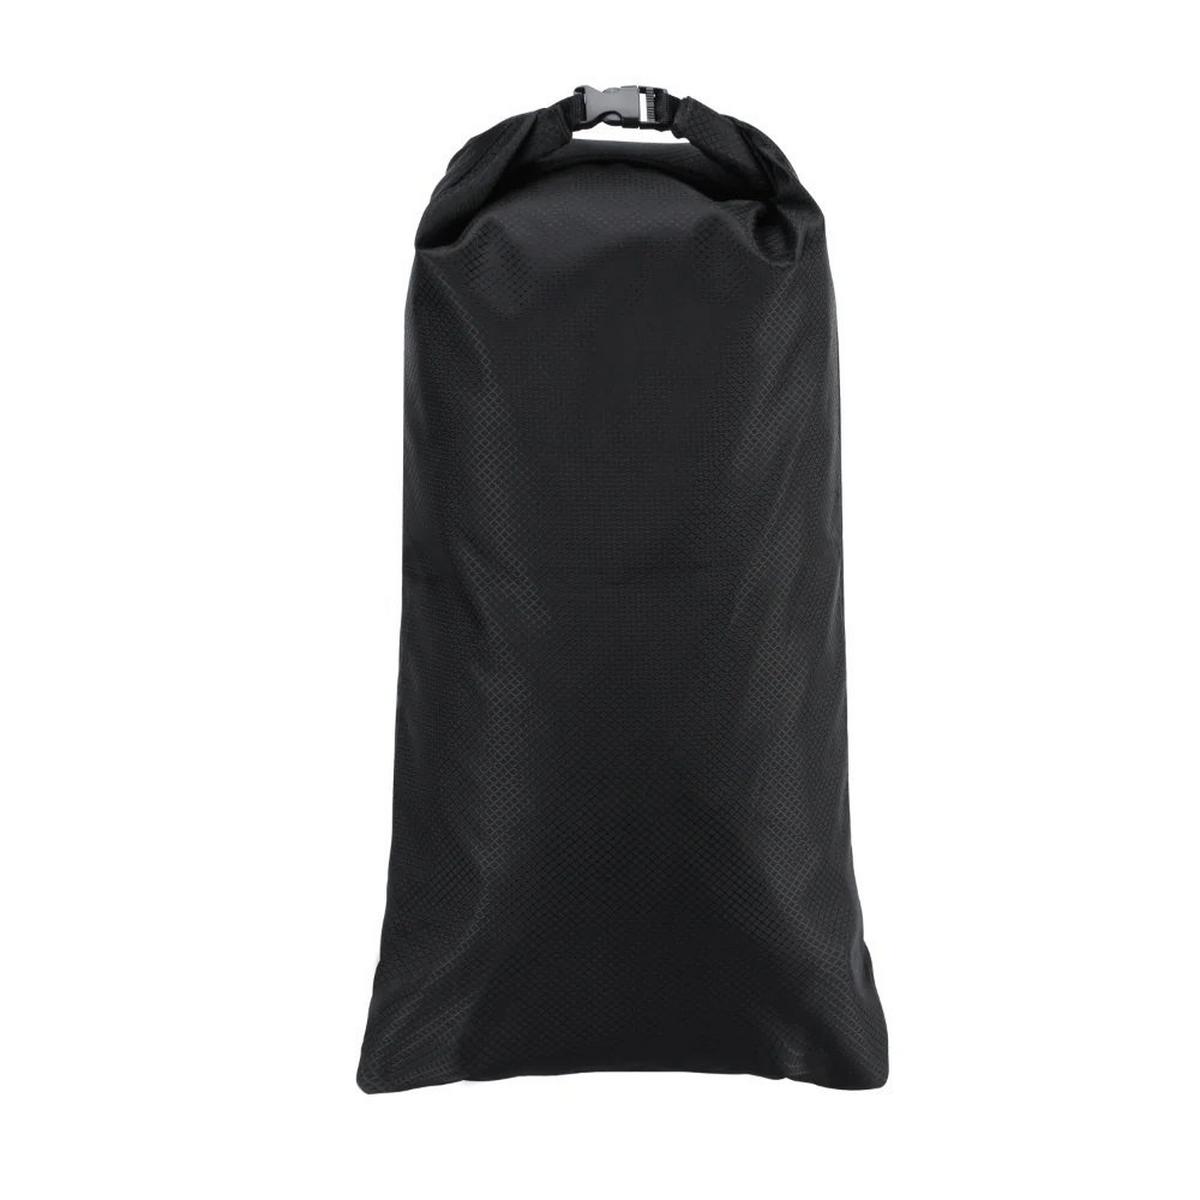 Kitbrix DobiPak 12L Dry Bag - Black